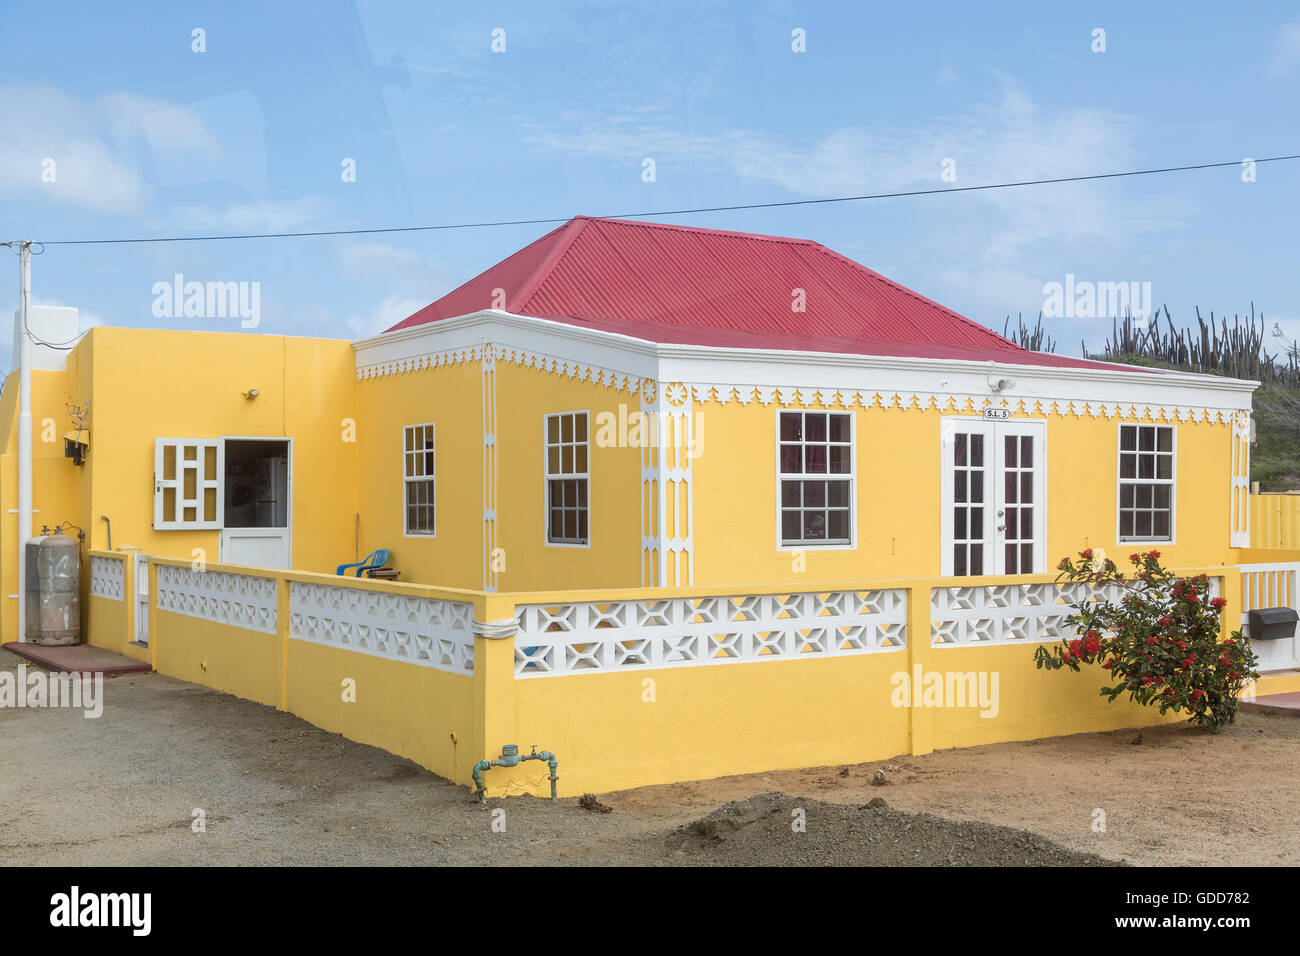 Plâtre jaune traditionnelle maison avec toit en tuiles rouges à Aruba Banque D'Images